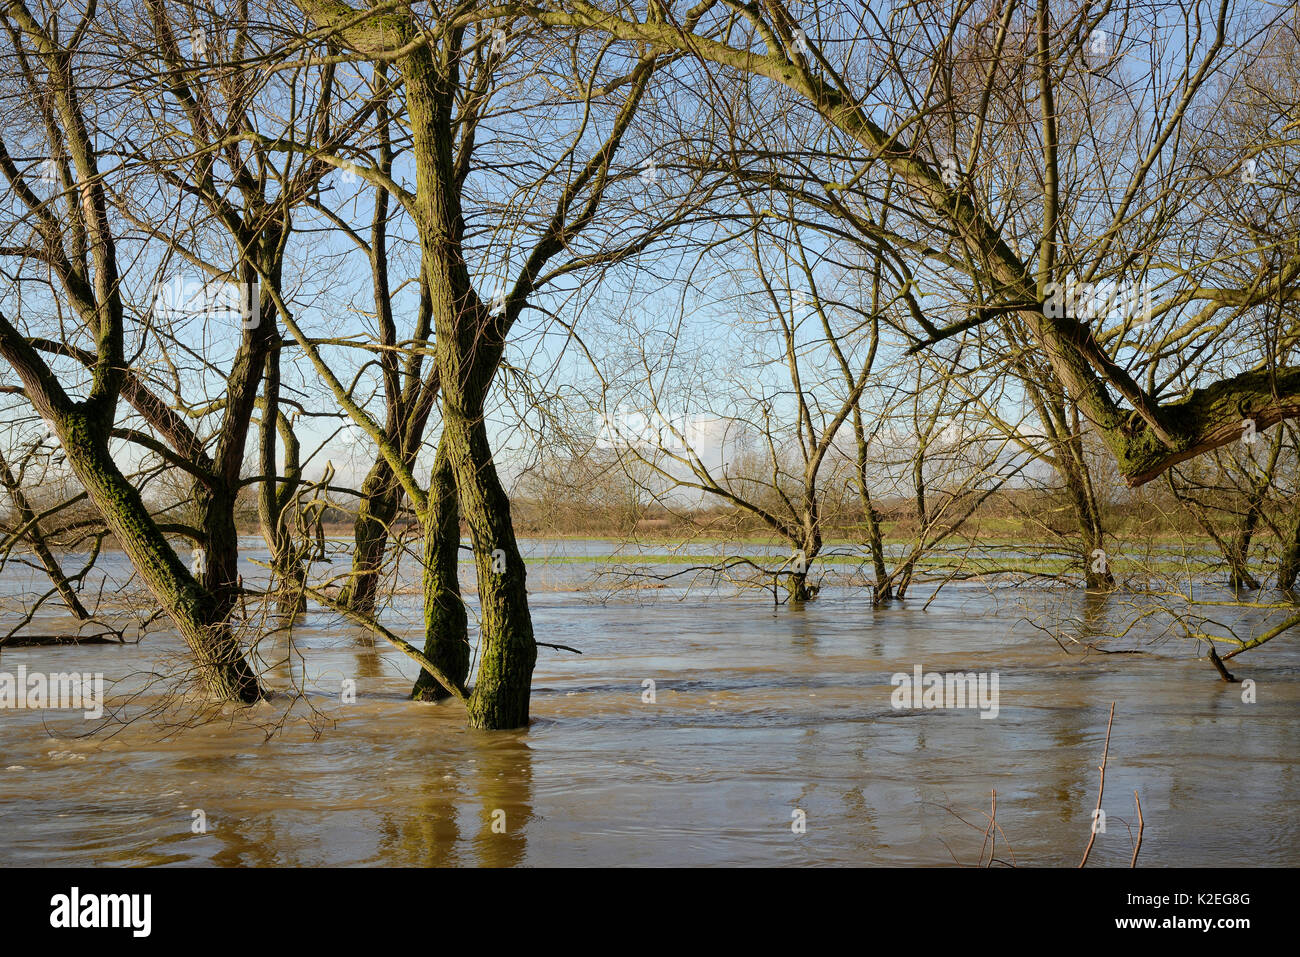 Saule (Salix sp.) frangeant la Rivière Avon en partie submergé après des semaines de forte pluie a fait éclater ses rives, Lacock, Wiltshire, Royaume-Uni, février 2014. Banque D'Images